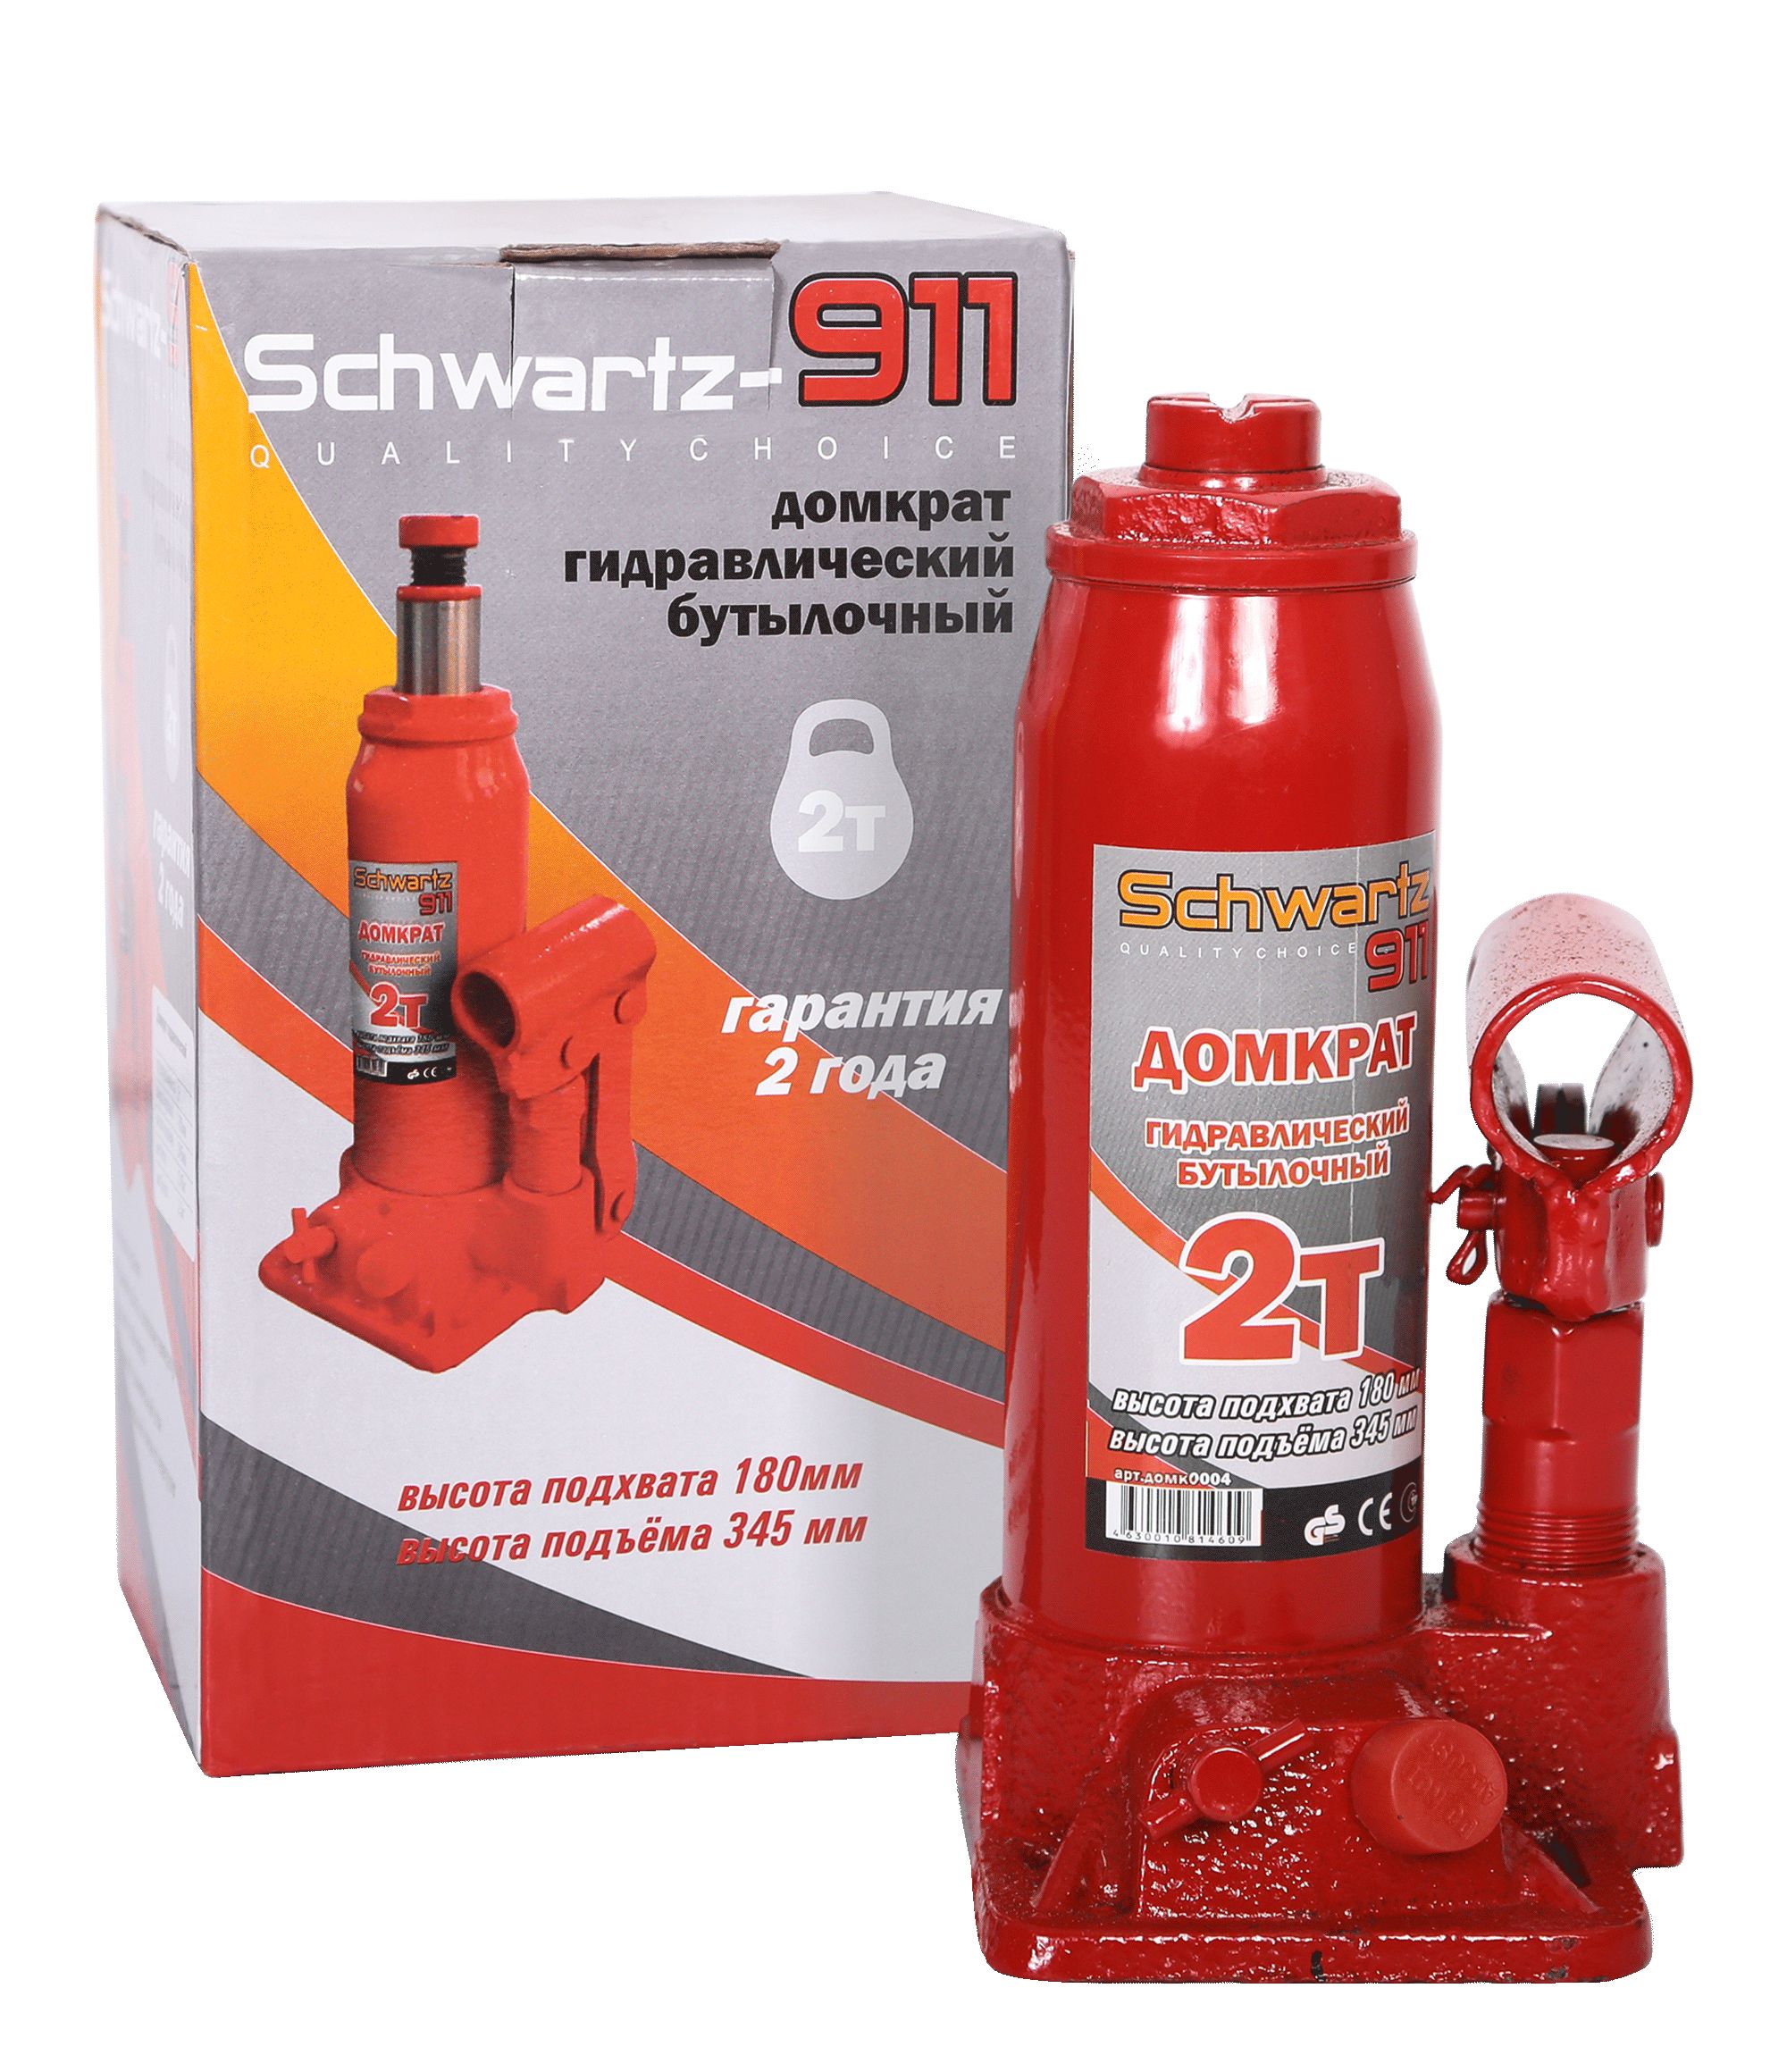 Гидравлический бутылочный домкрат schwartz-911 2 т - AZARD DOMK0004